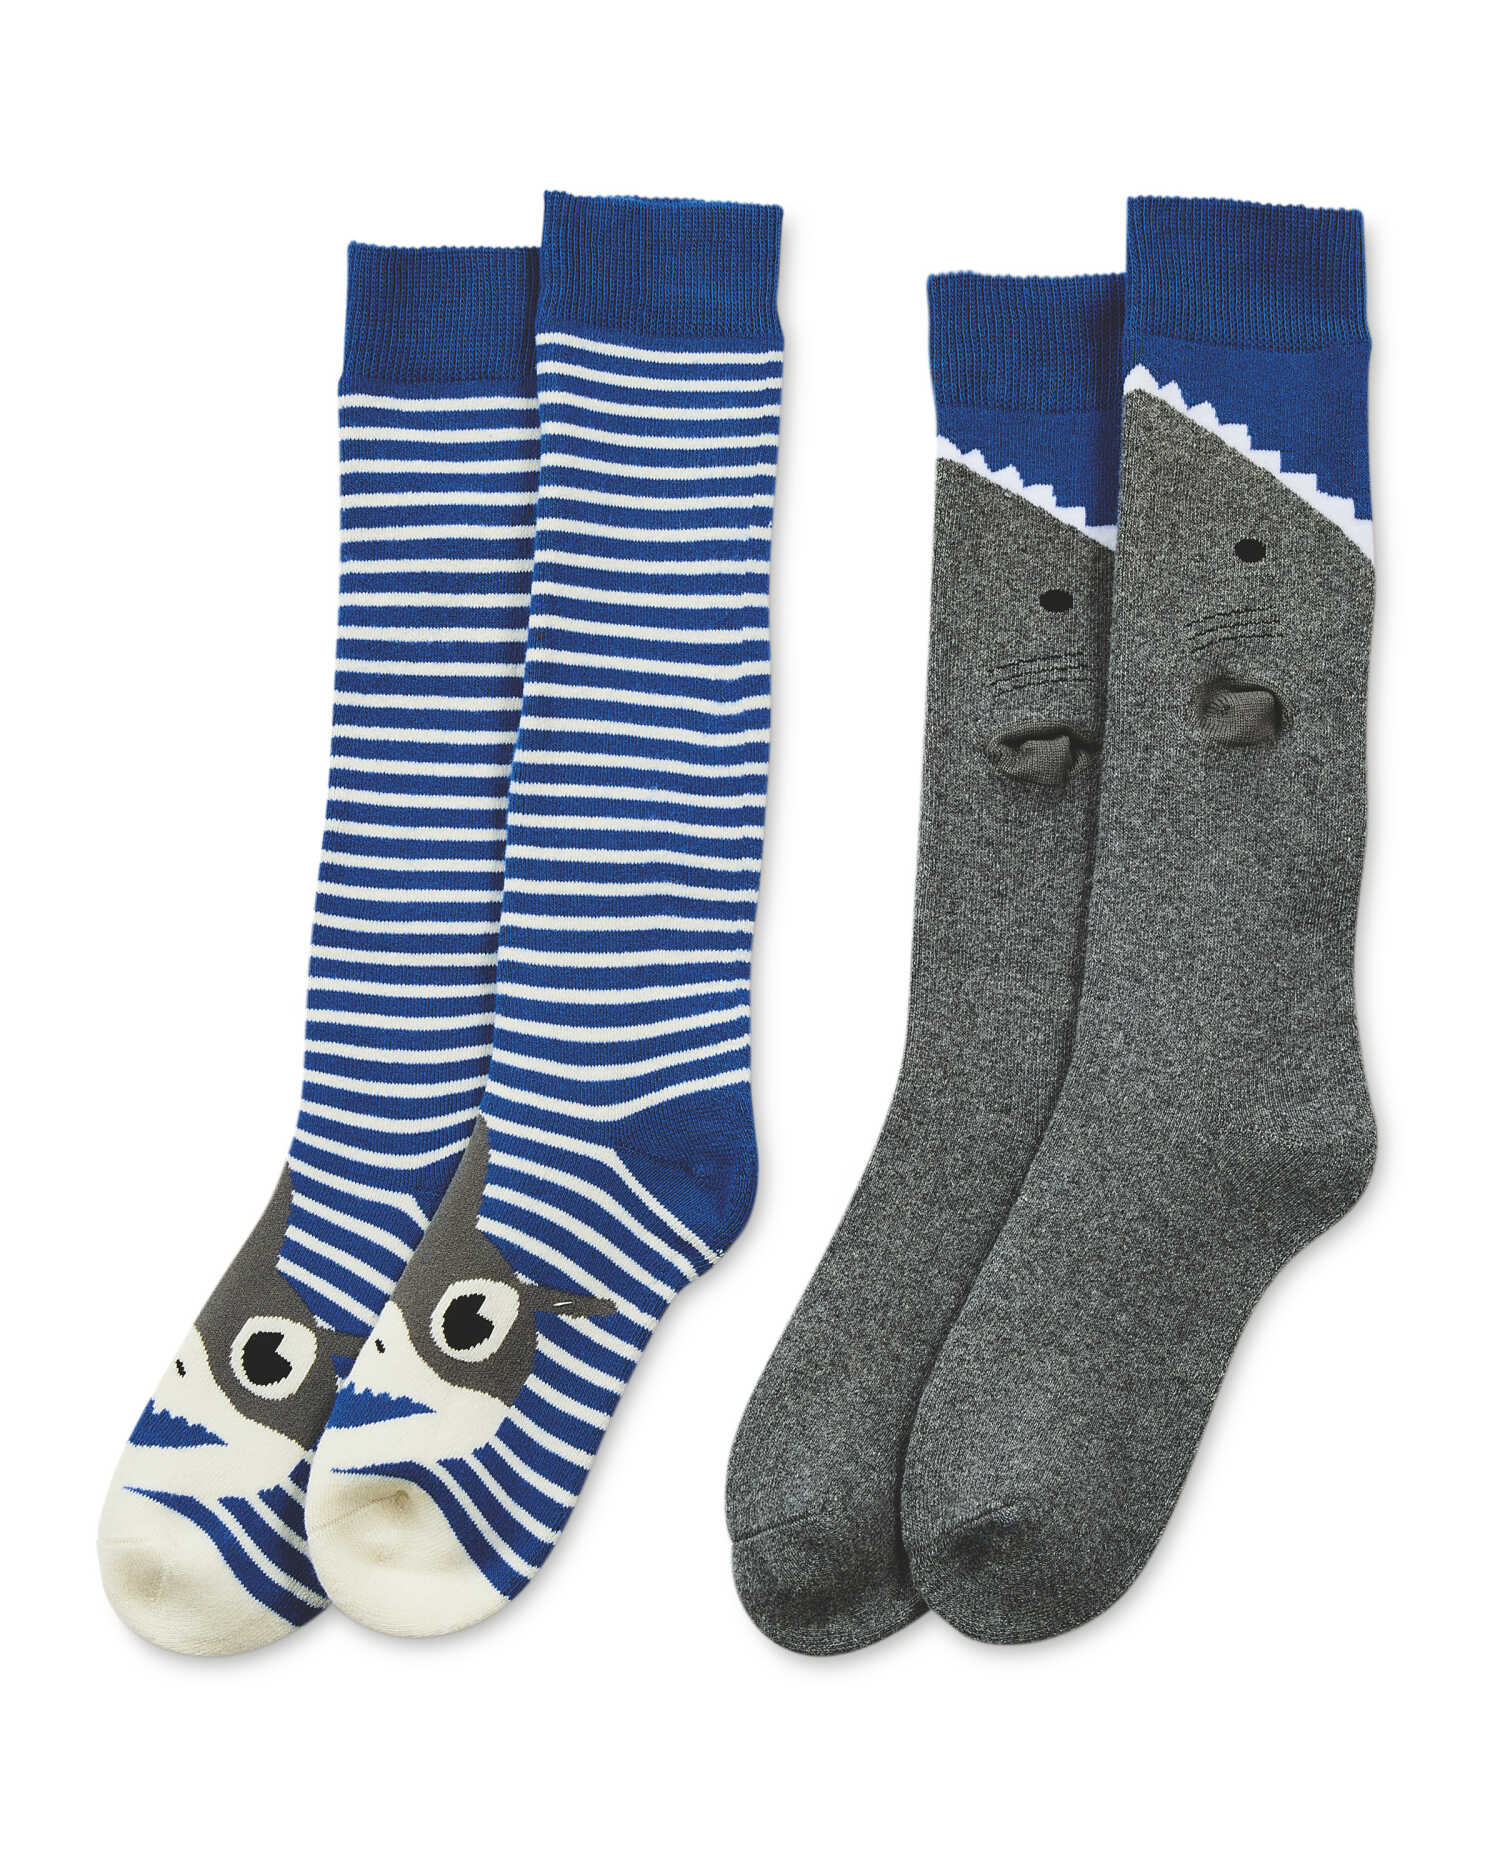 Kids' Shark Welly Socks 2 Pack